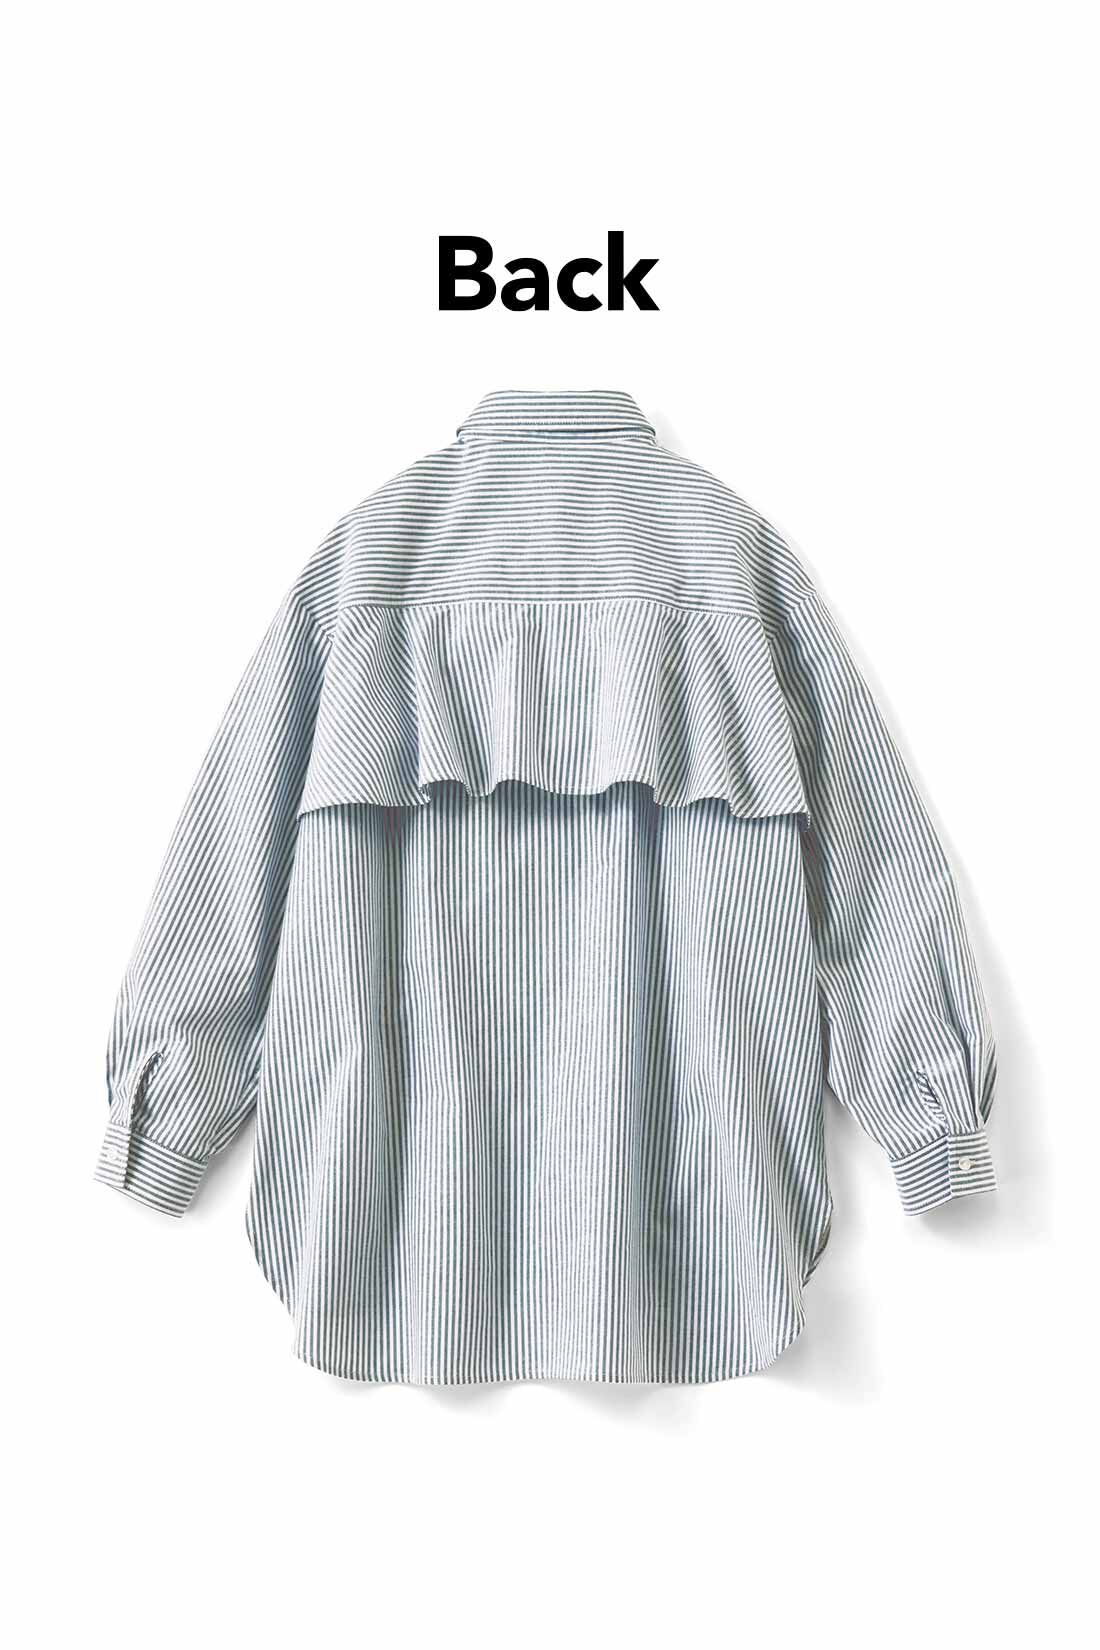 IEDIT[イディット]　バックフレアーデザインがきいた オックスフォード素材のこなれ見えシャツ〈グレー〉|バックフレアーで後ろ姿に女らしさをプラス。